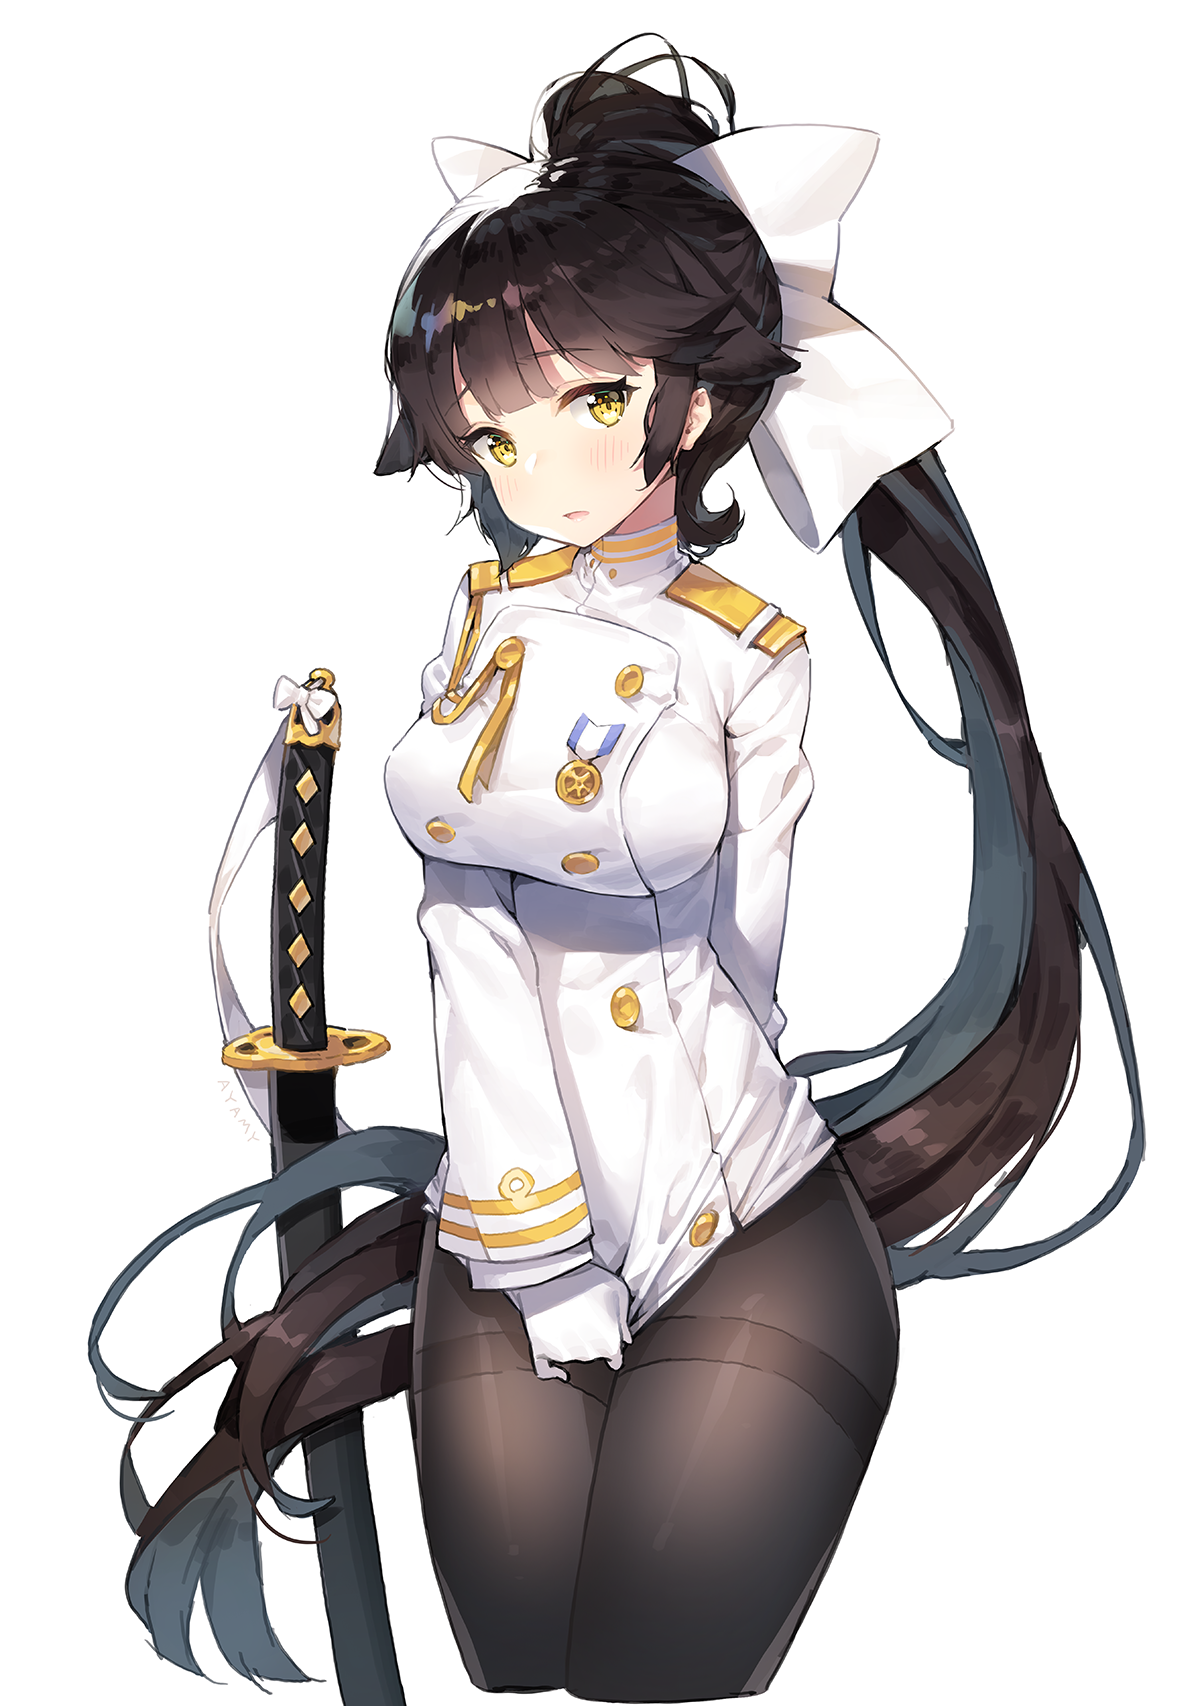 Anime 1200x1706 boobs white background pantyhose sword uniform Azur Lane Takao (Azur Lane) anime girls